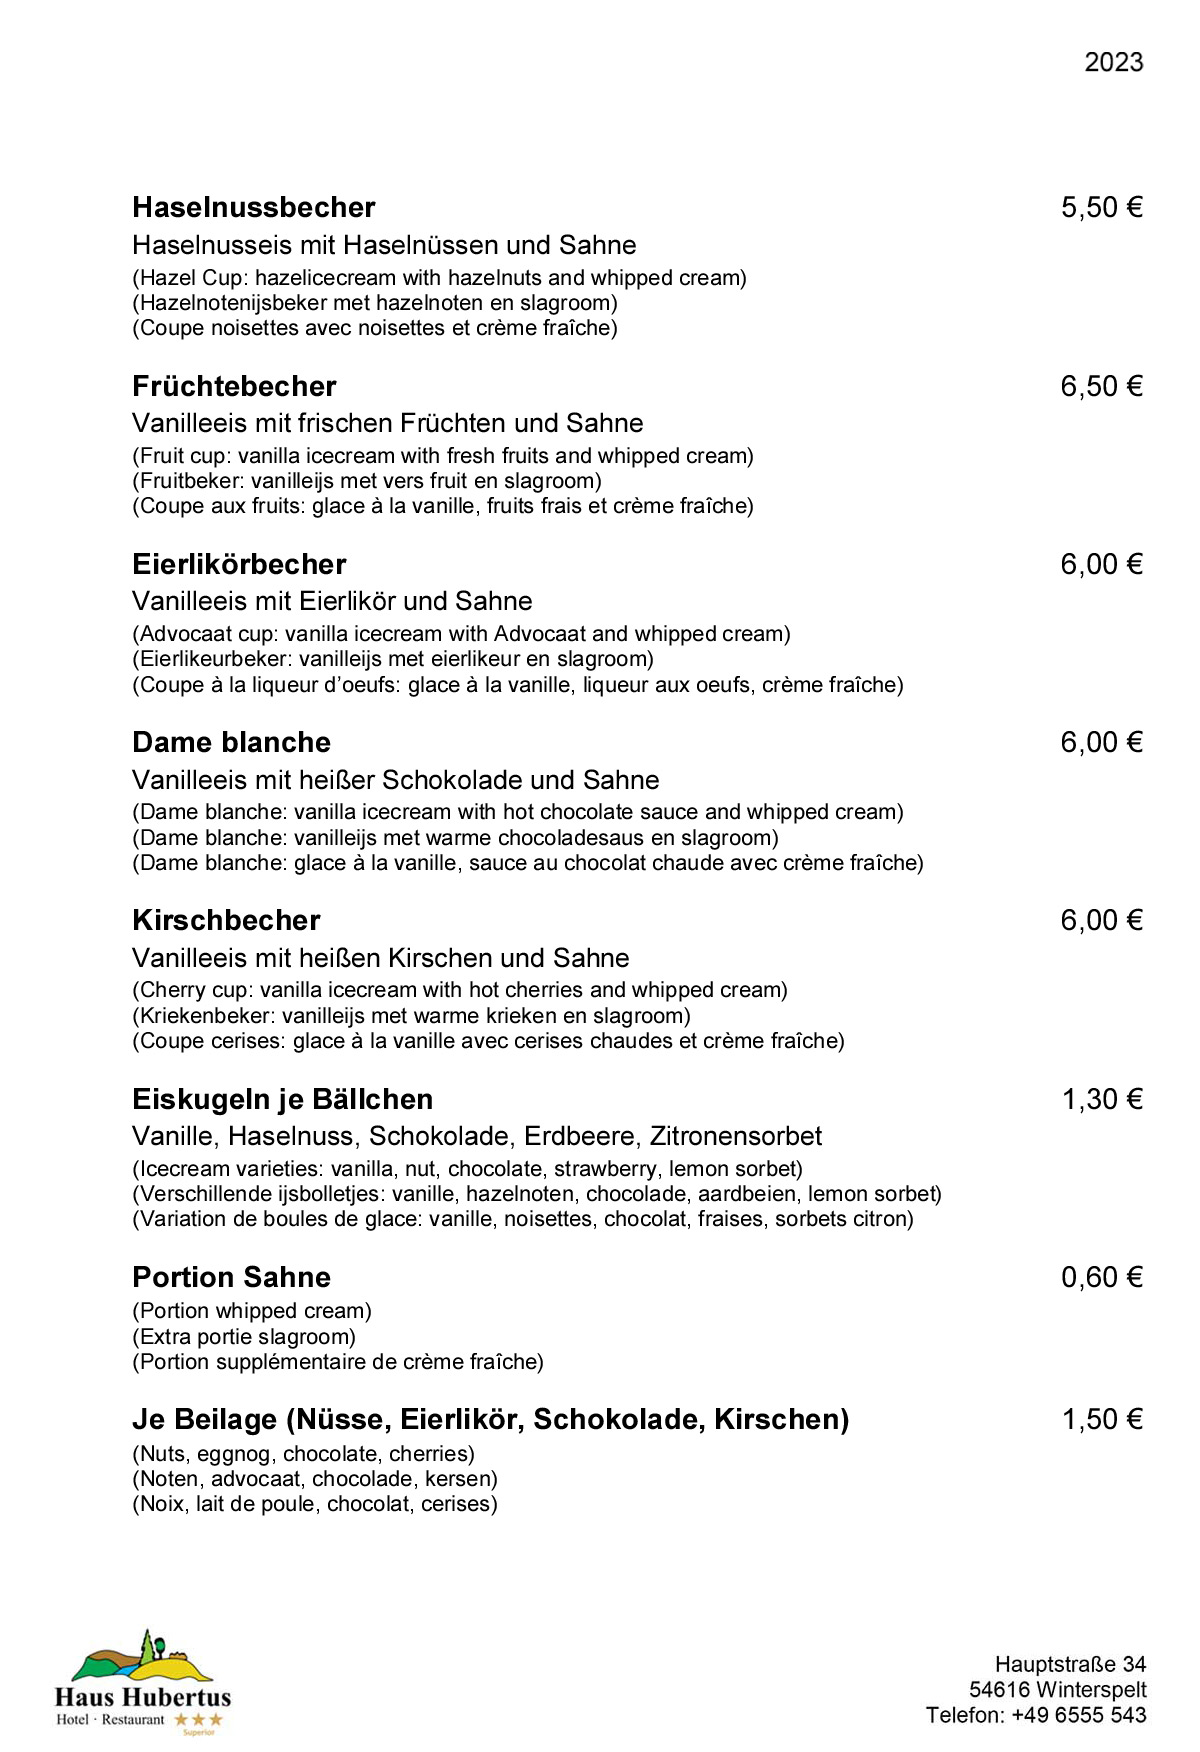 Hotel - Restaurant Haus Hubertus - Speisekarte 02/2023 - Die Klassiker - Seite 4